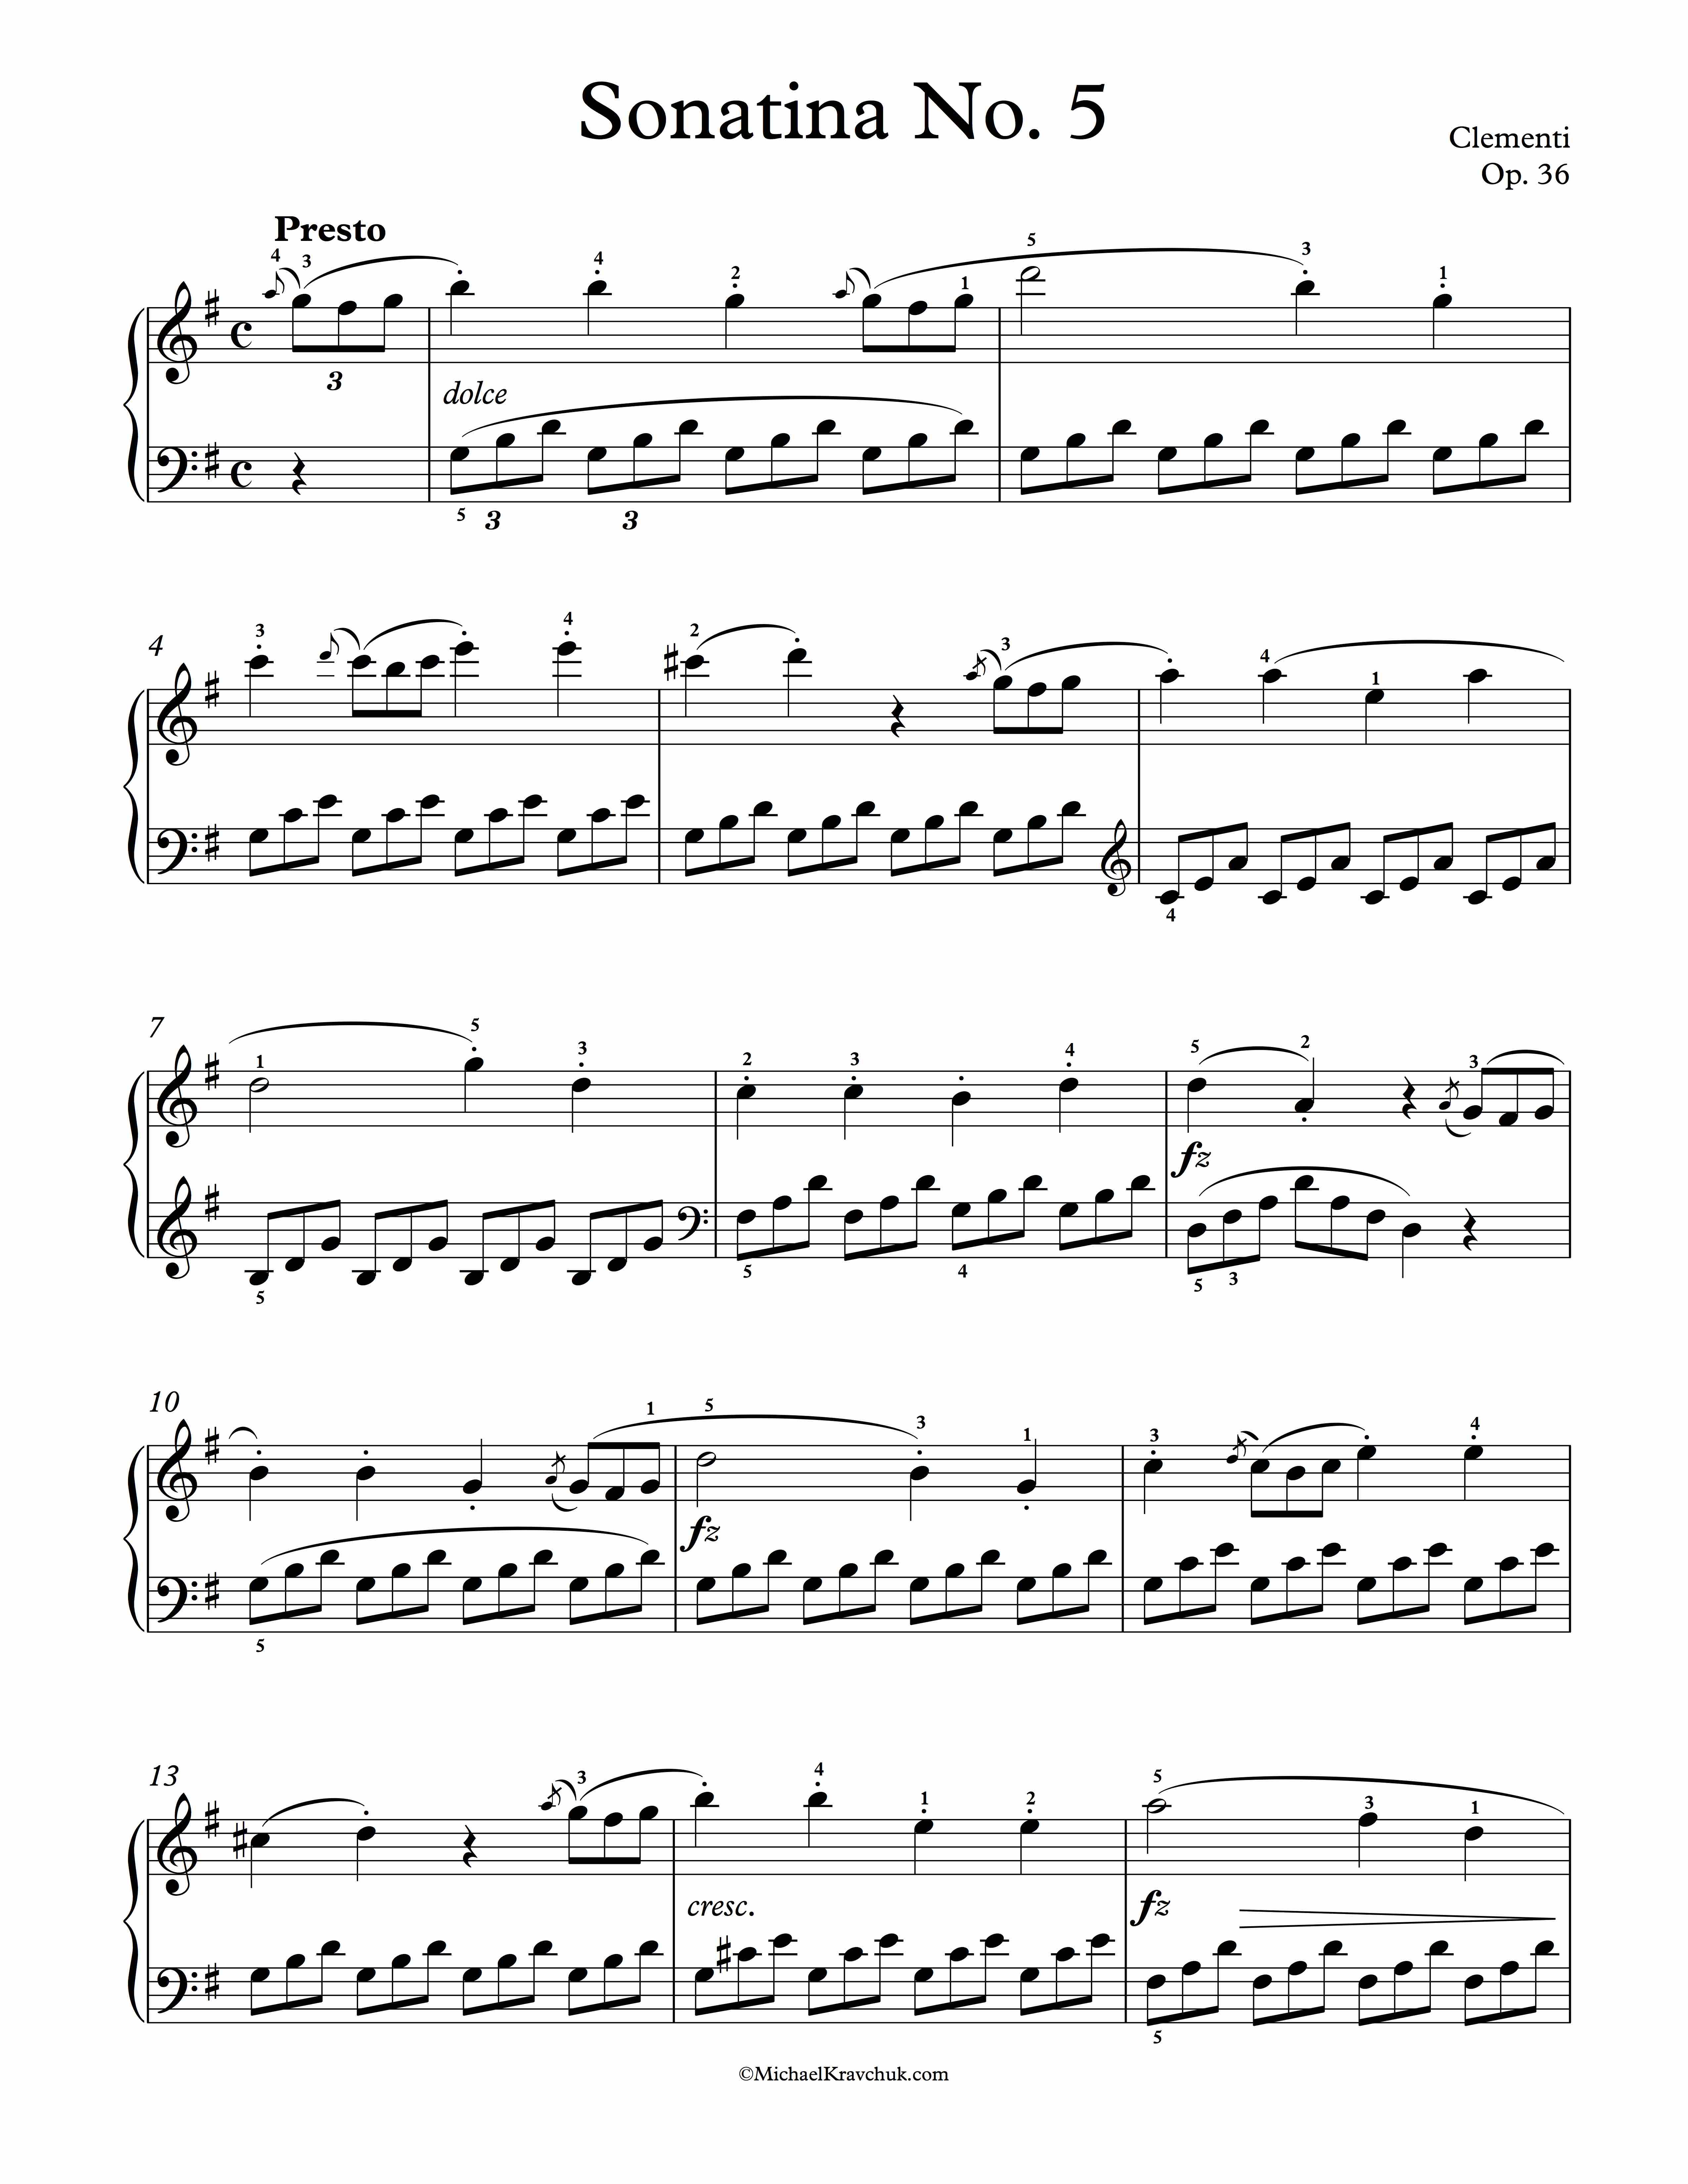 Free Piano Sheet Music - Sonatina Op. 36, No. 5 - Clementi